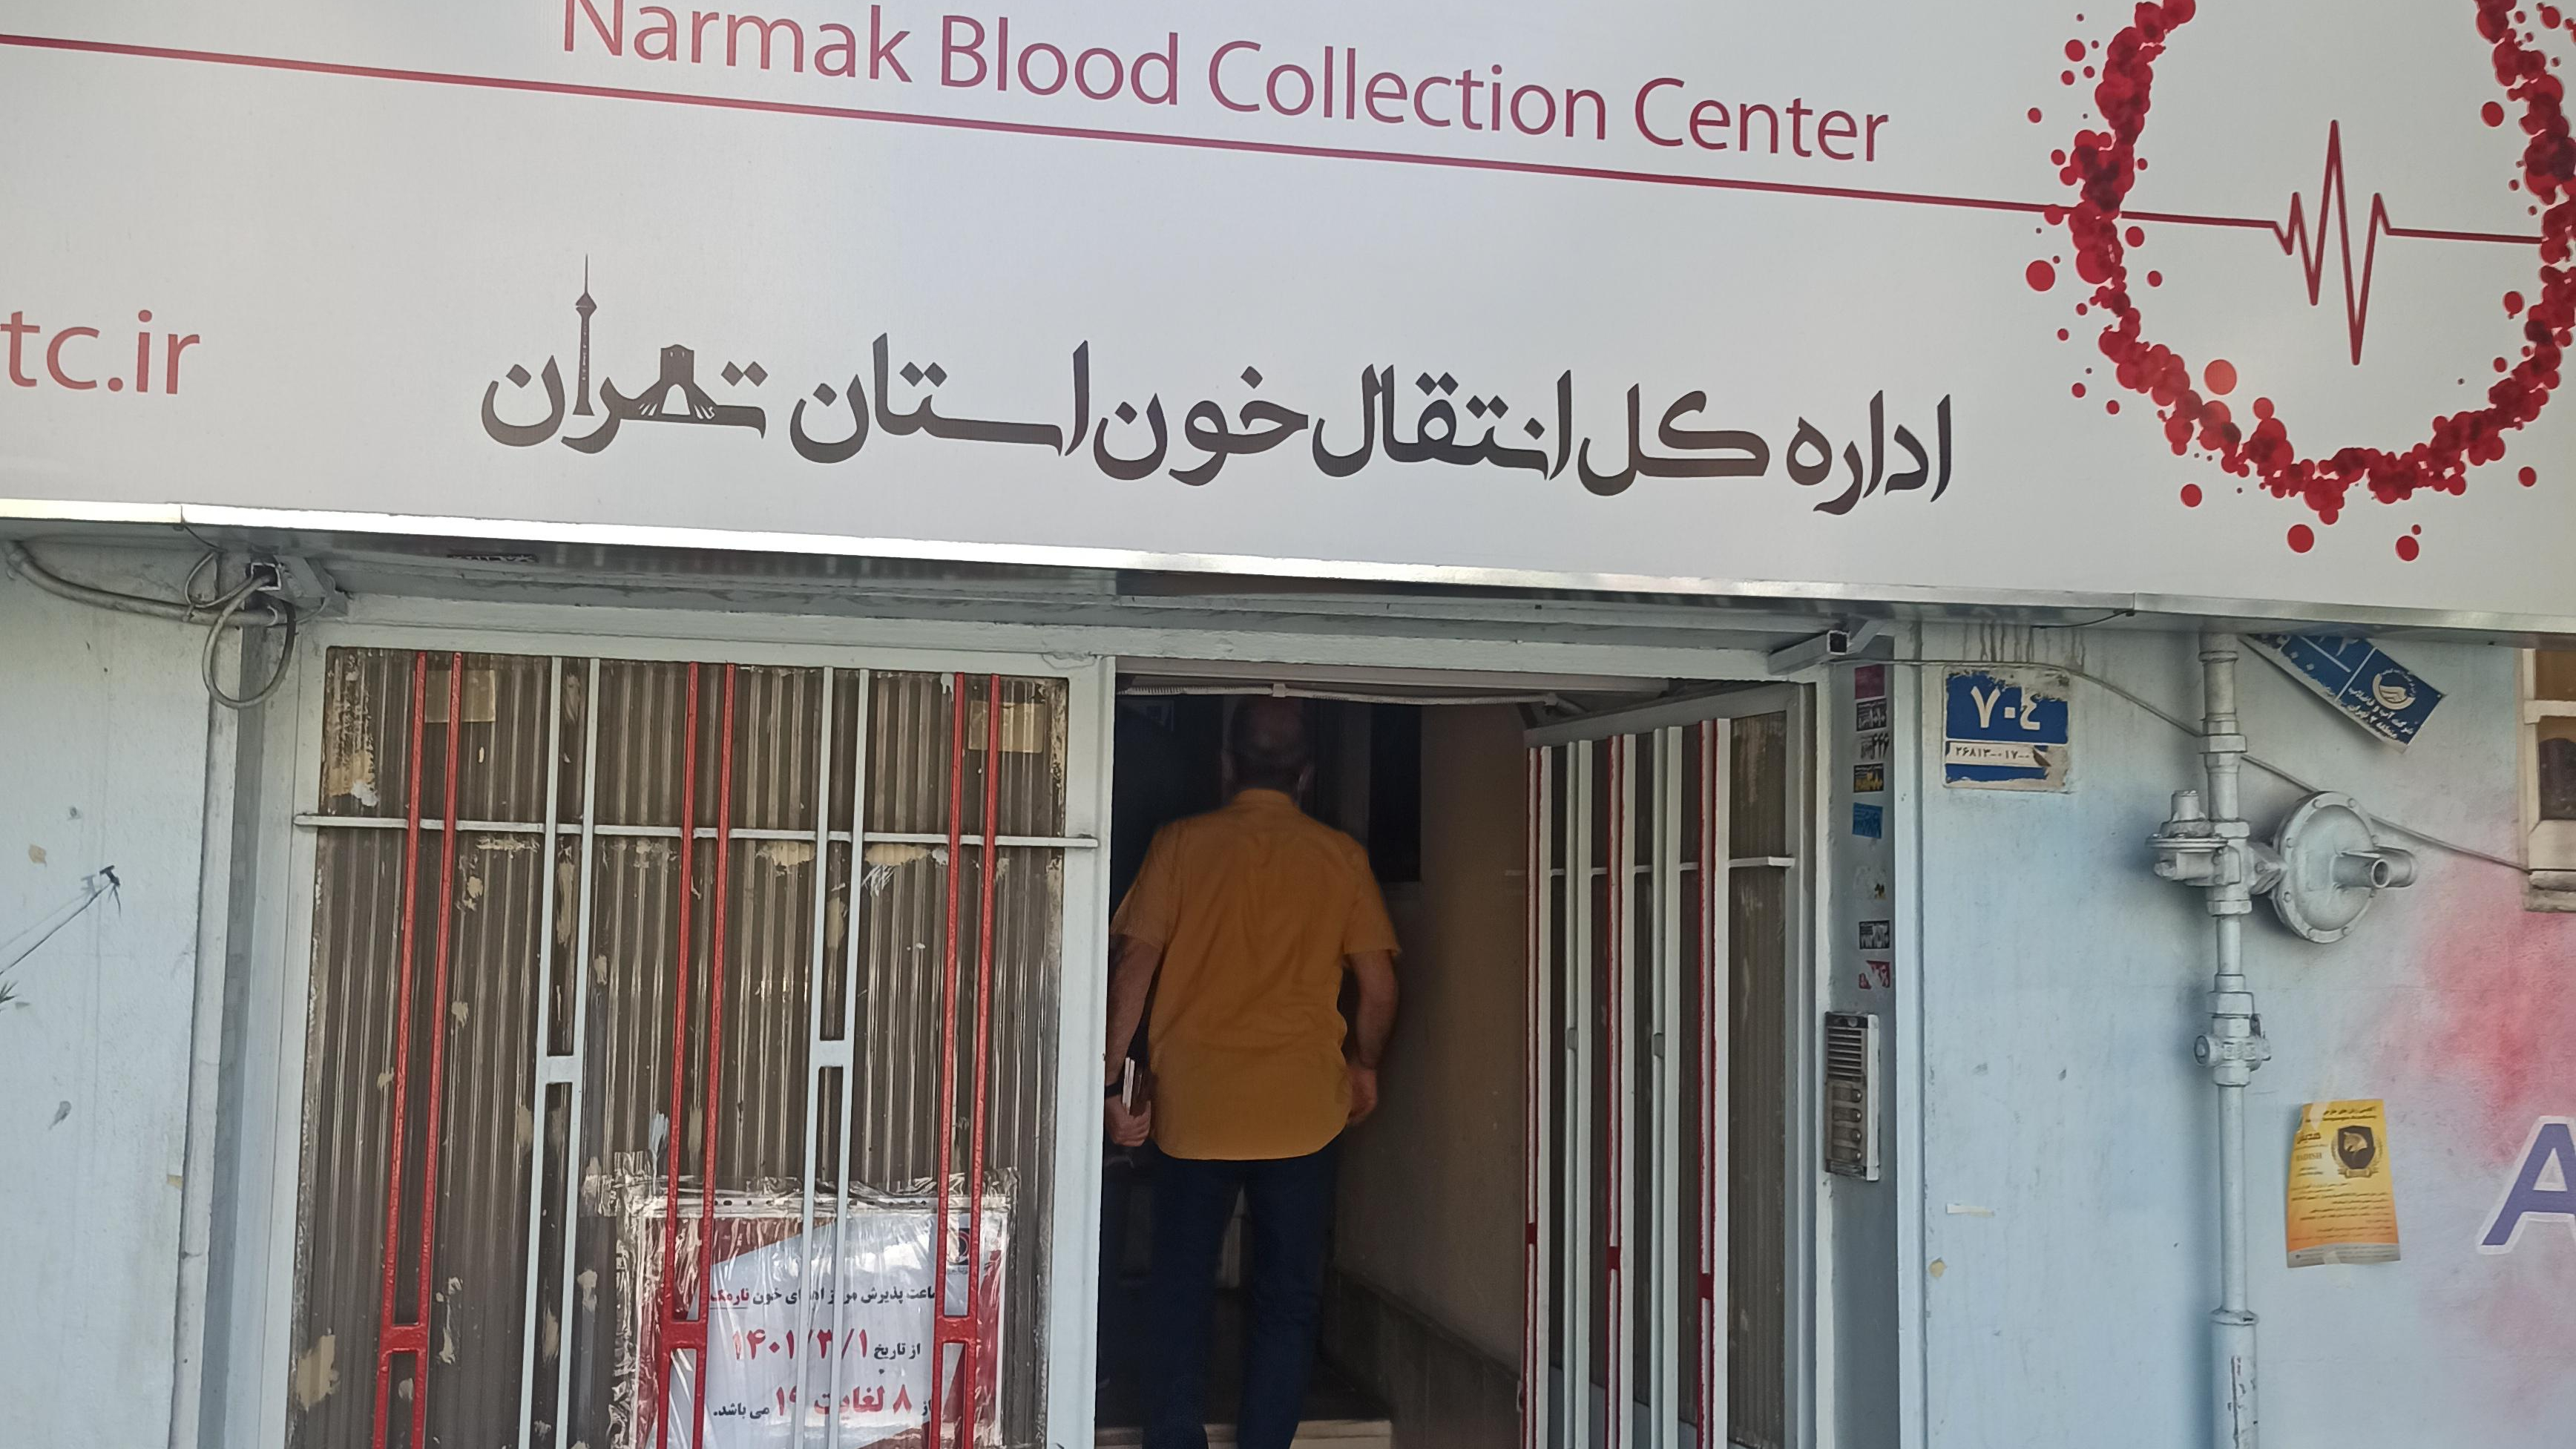 مرکز اهدای خون نارمک